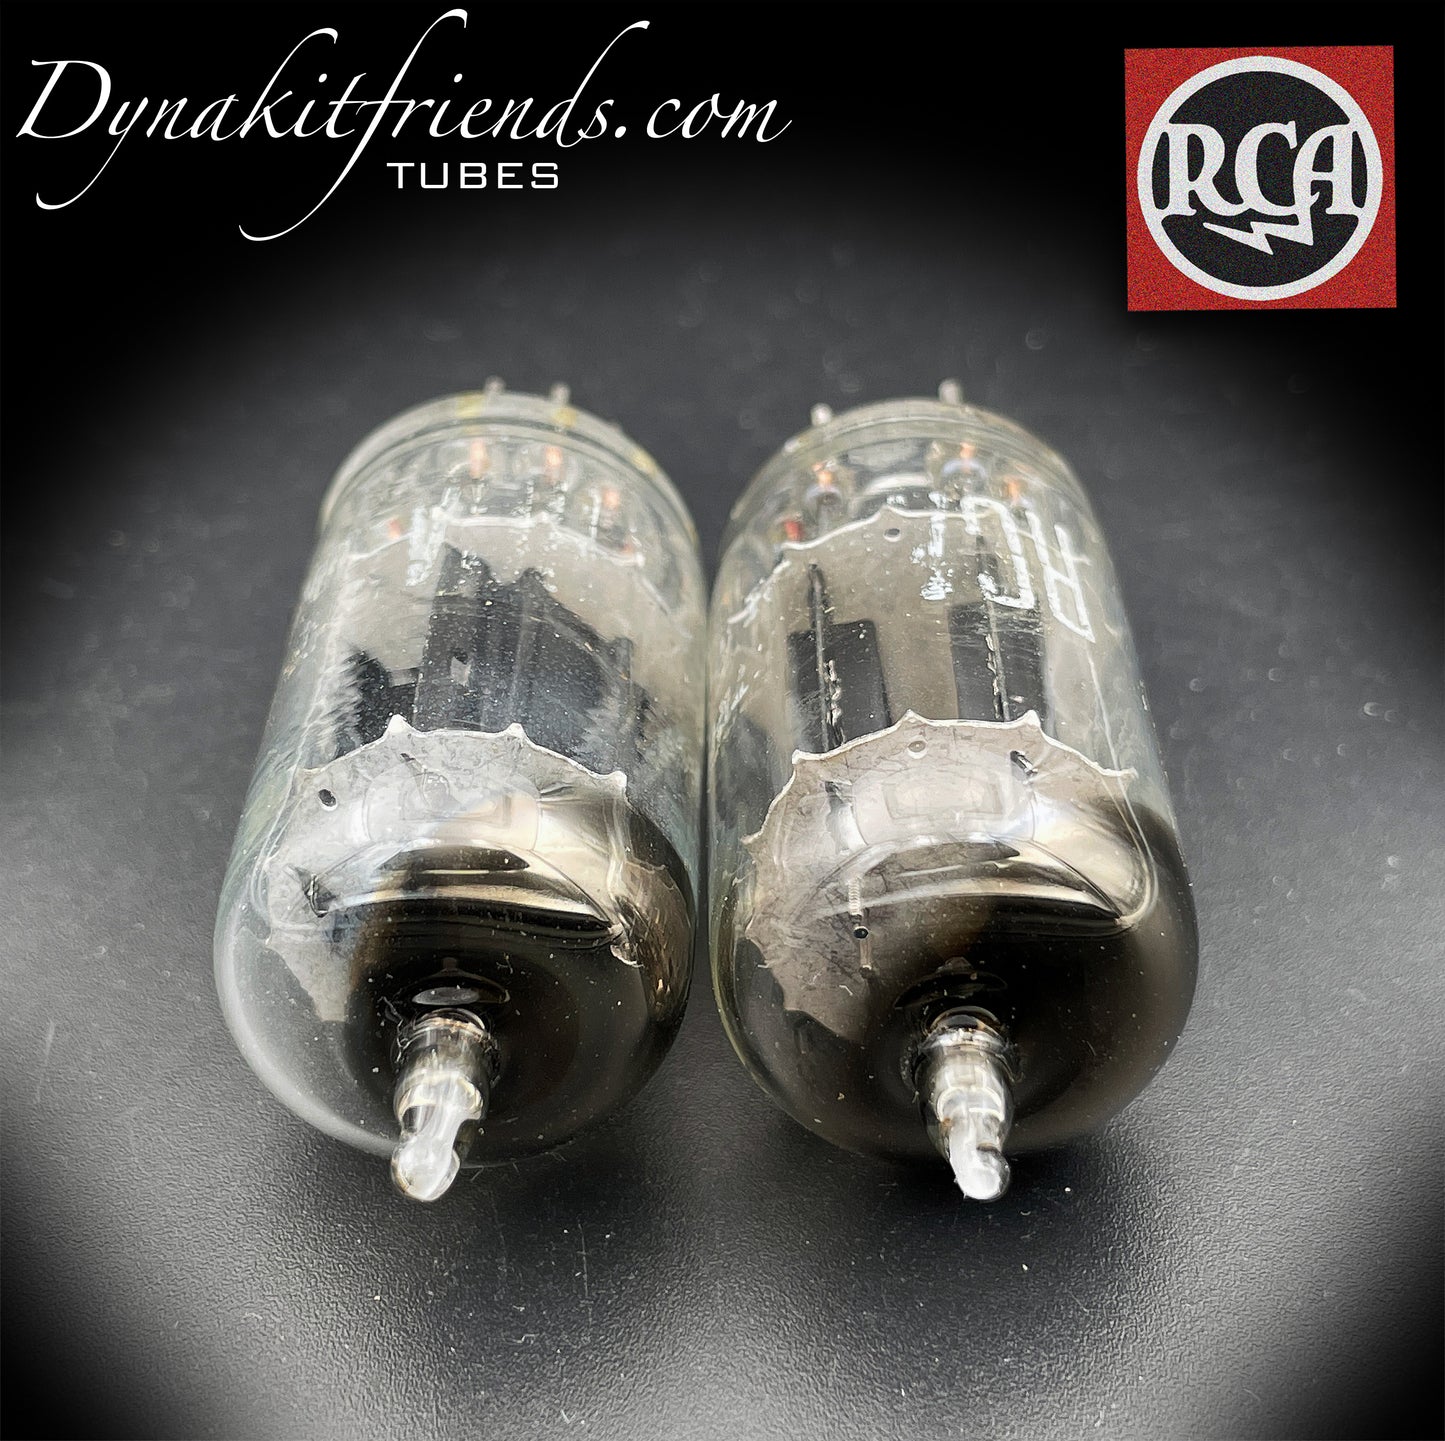 12AX7 (ECC83) RCA NOS longues plaques noires [] tubes assortis à getter inclinés fabriqués aux États-Unis dans les années 50